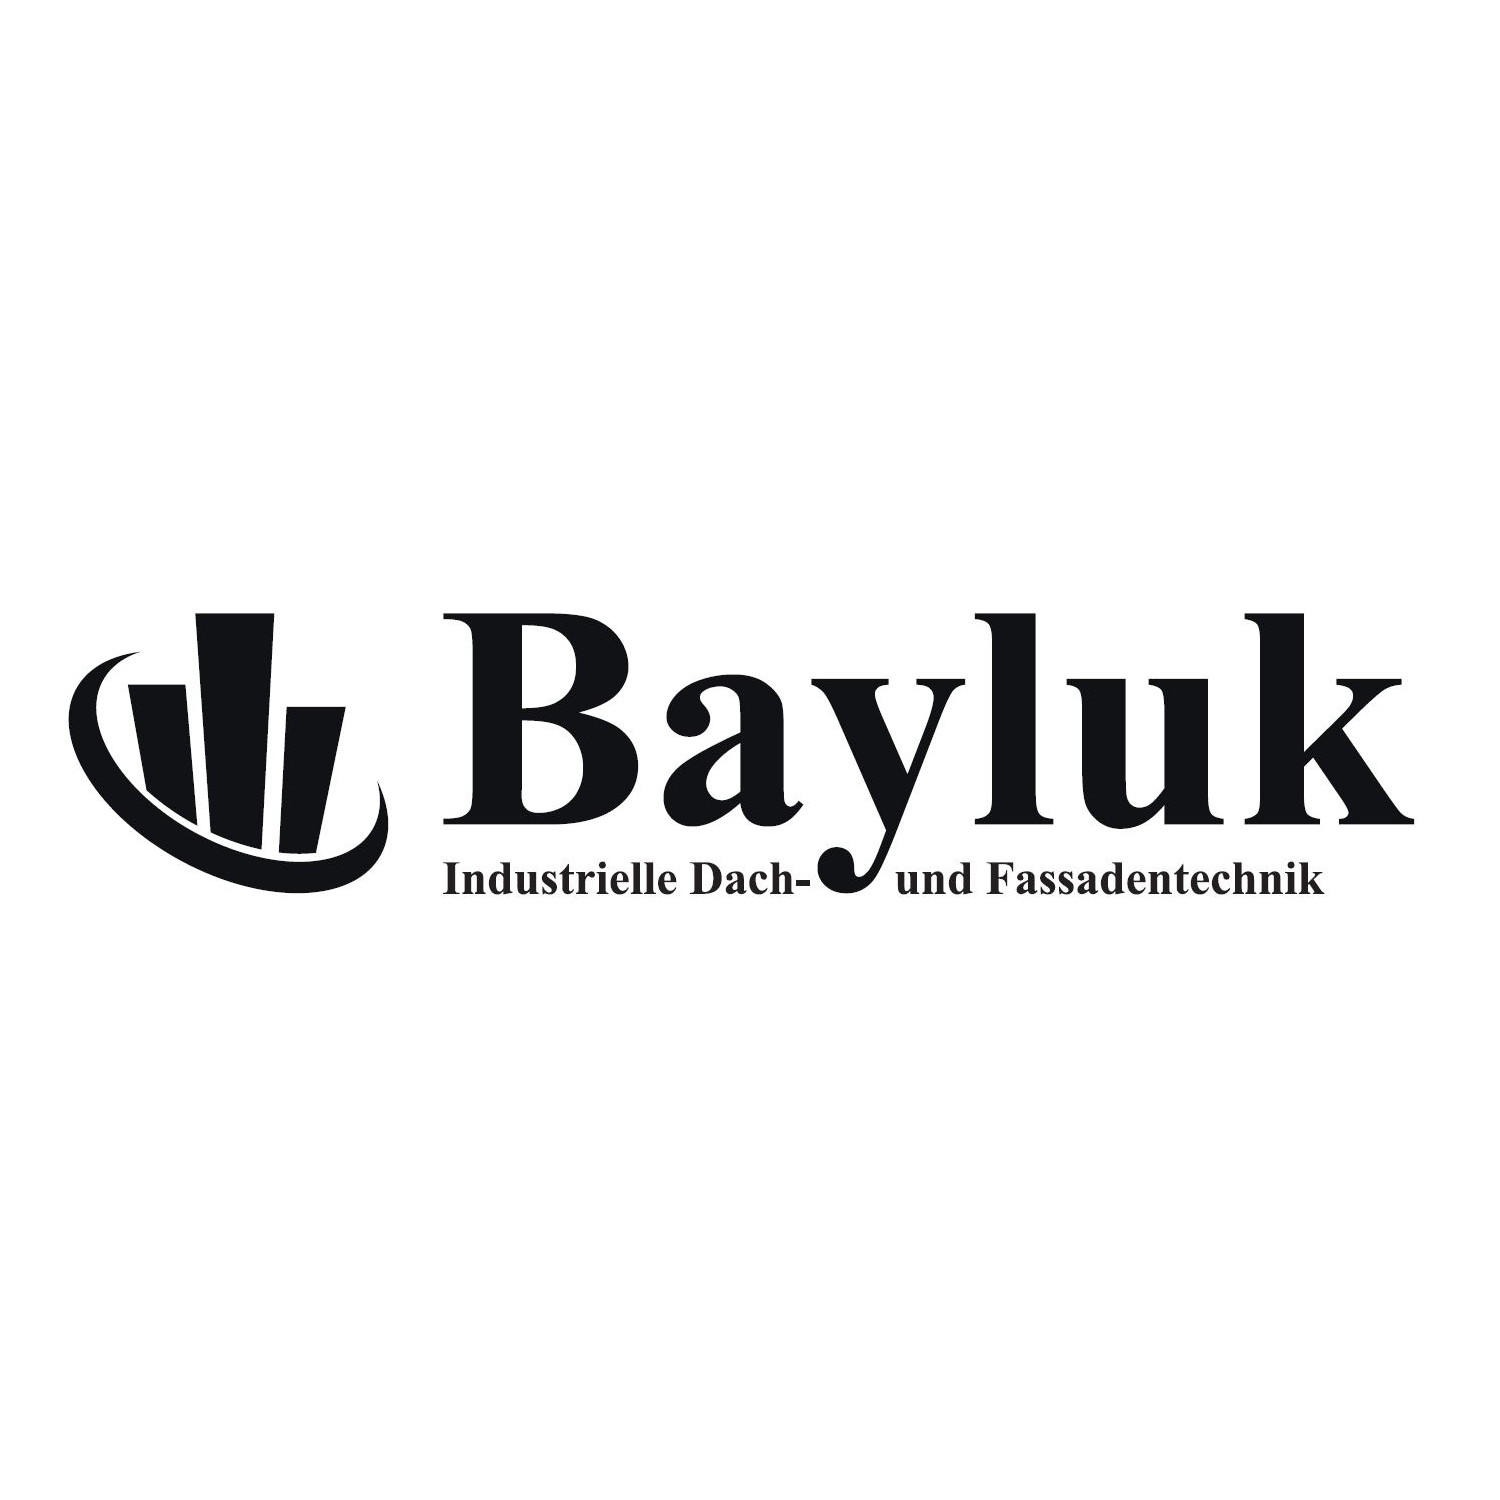 Bayluk Industrielle Dach- und Fassadentechnik in Rhede in Westfalen - Logo